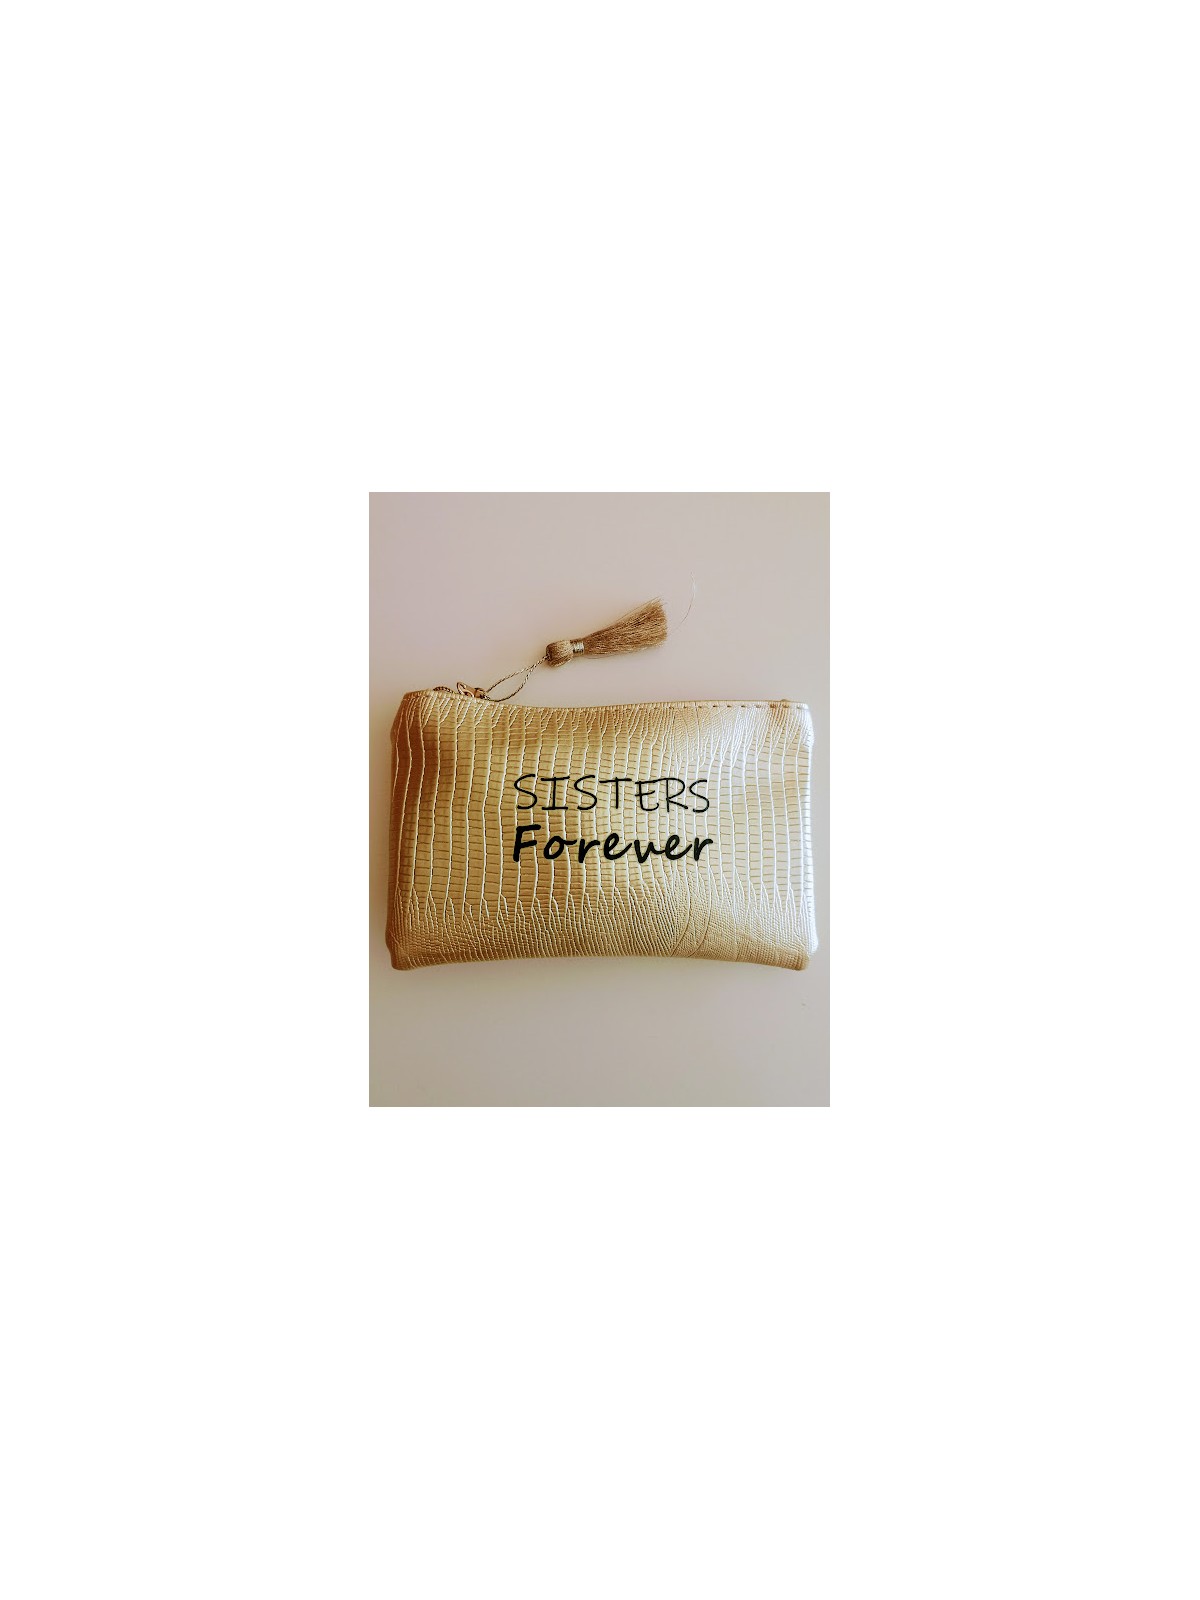 Pochette Sister Forever zippée | 1 vue de face entière | Tilleulmenthe boutique de mode femme en ligne